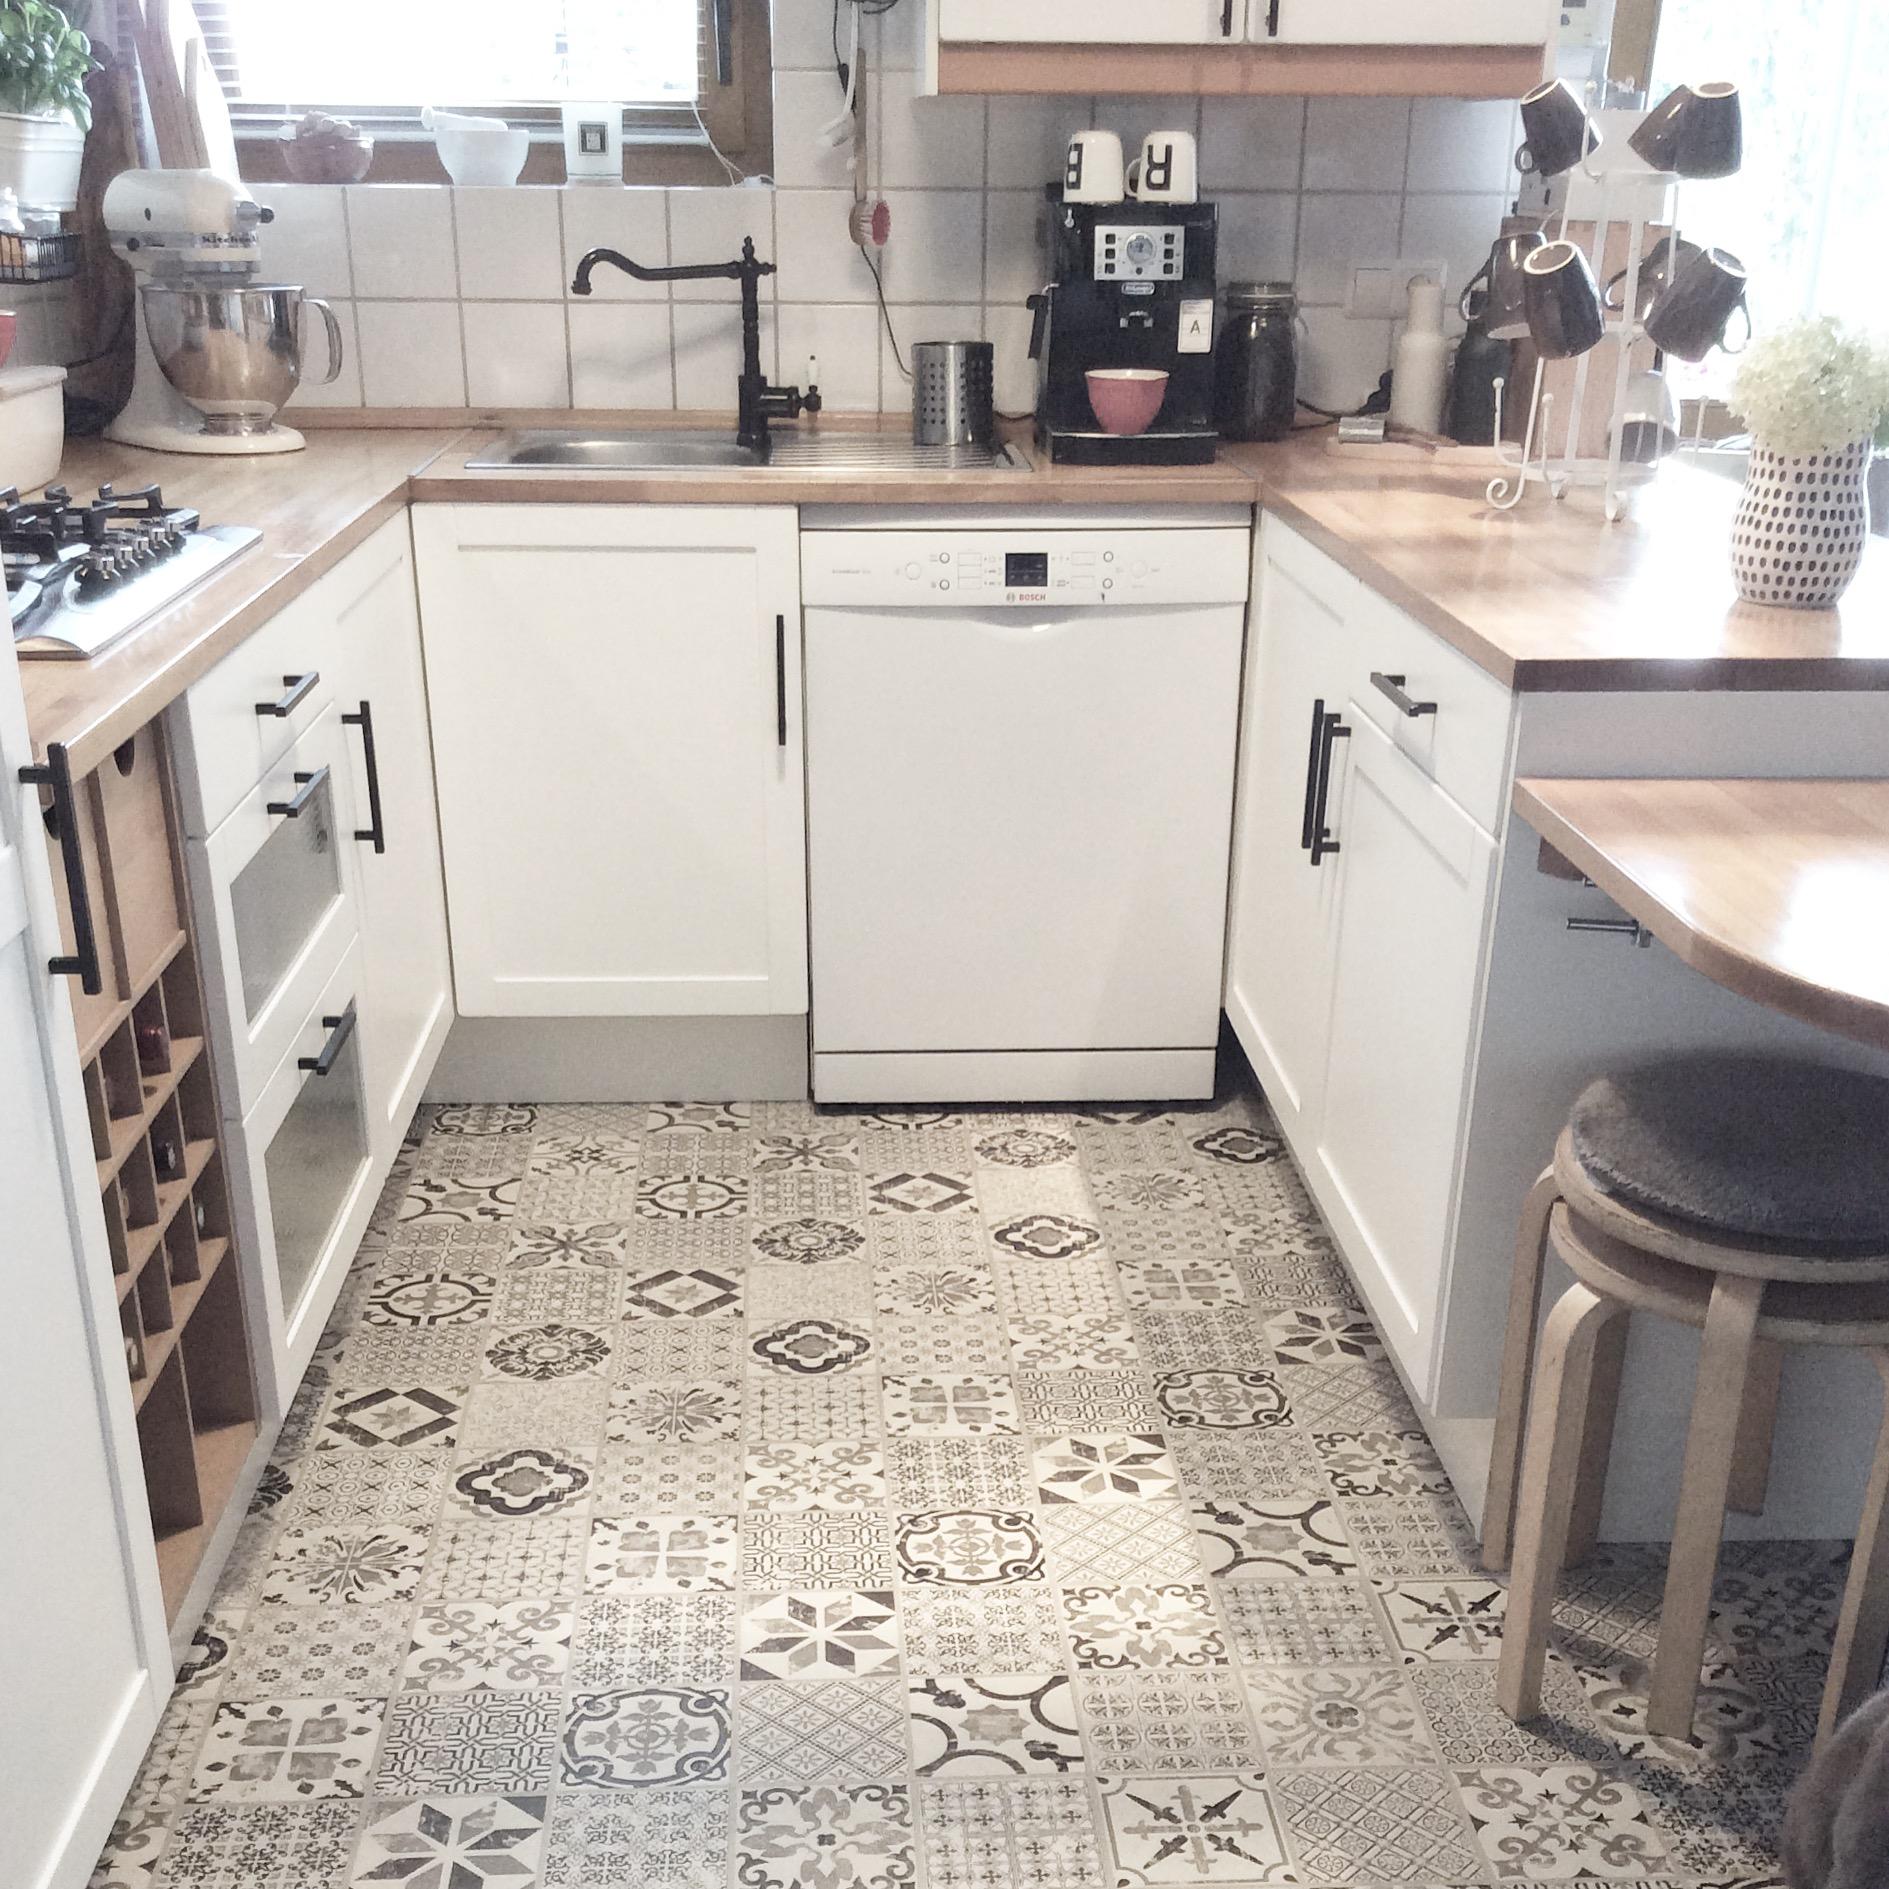 Nach 19 Jahren haben wir unserer #küche von Ikea einen neuen Anstrich verpasst #ikeahack #vinylboden #ikeaküche